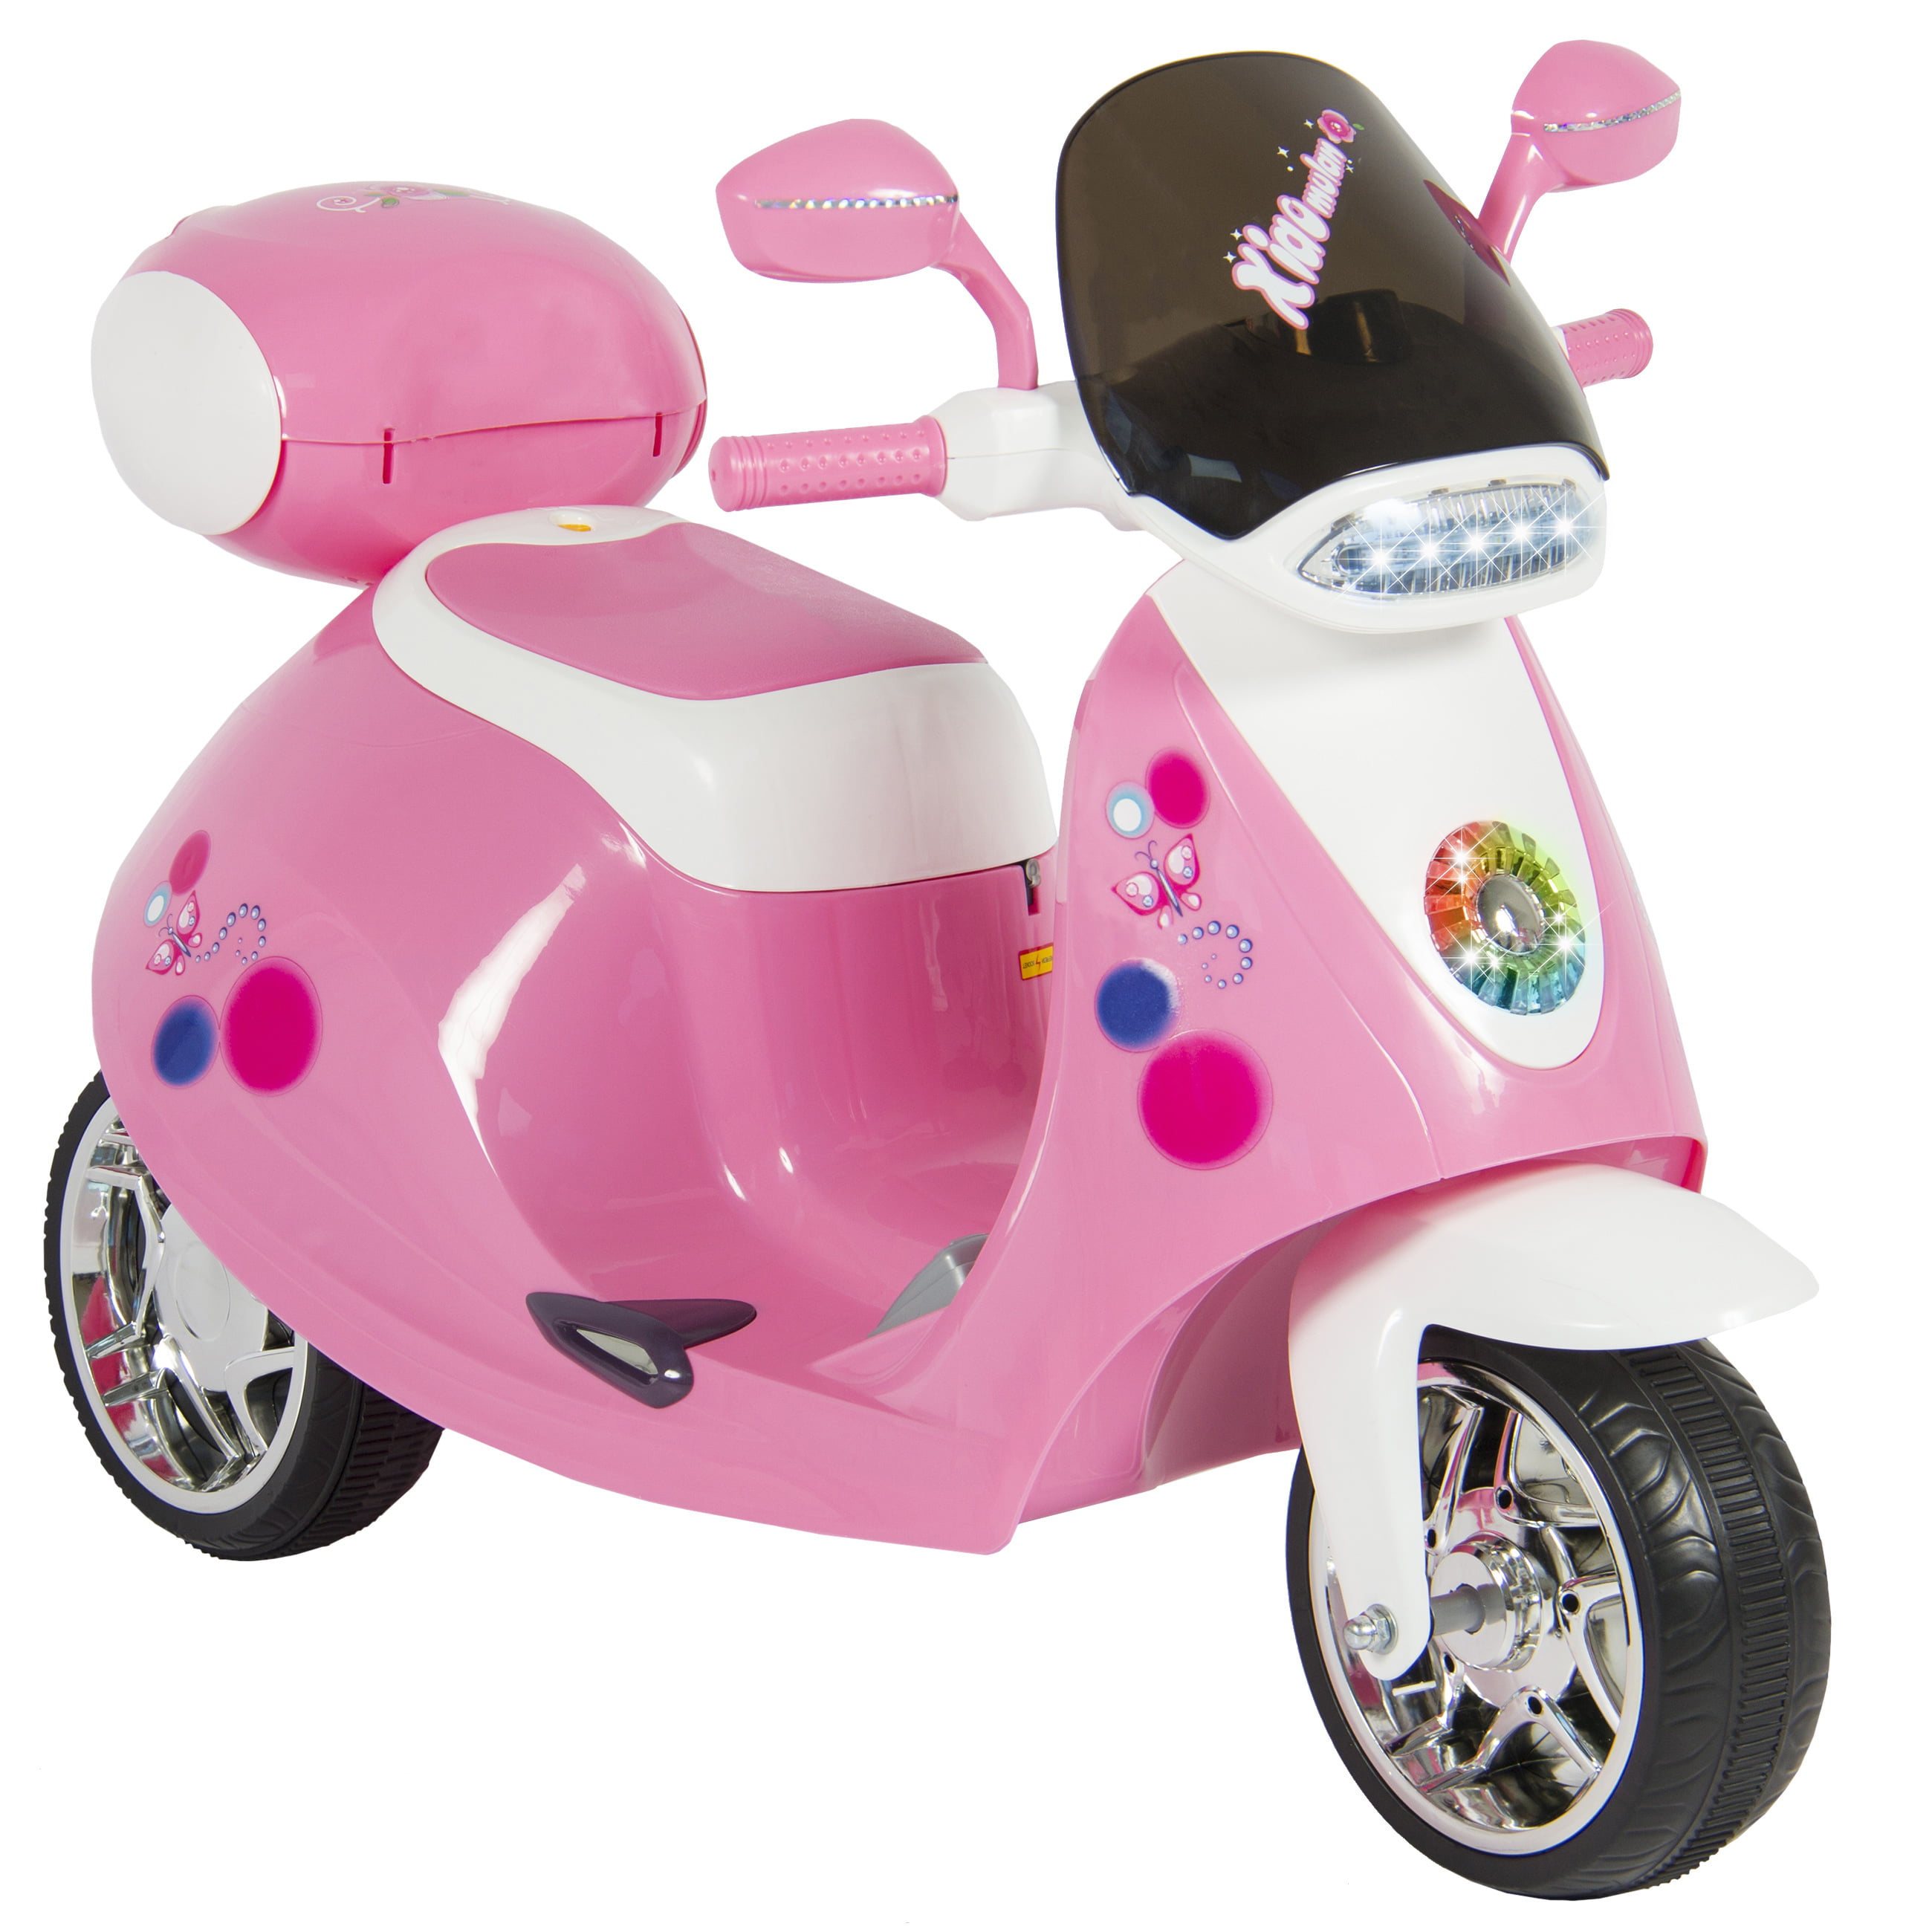 mopeds for kids